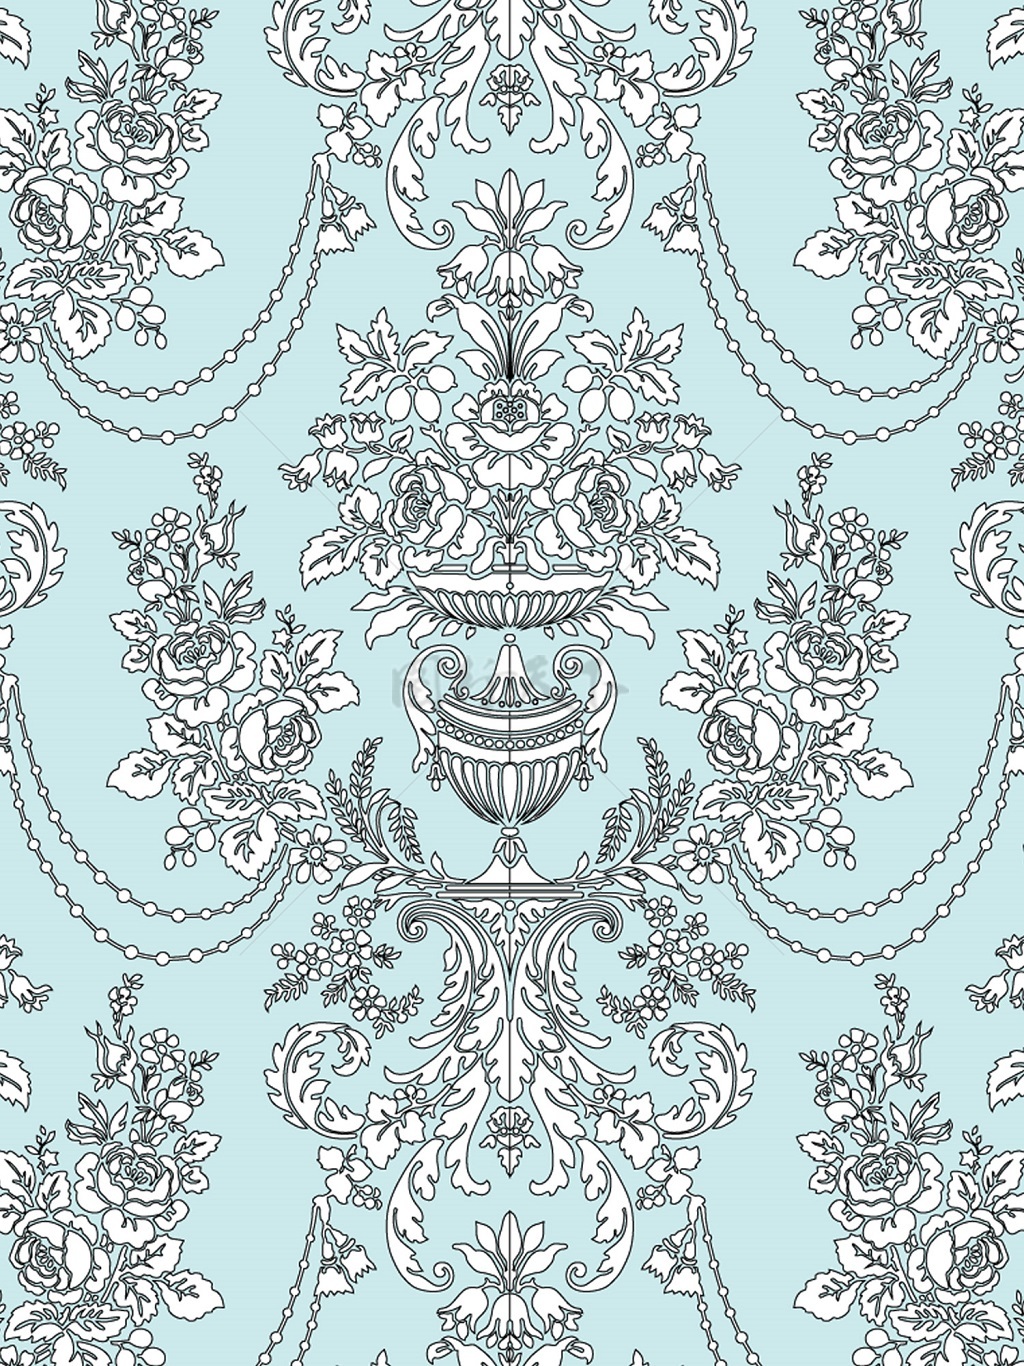 传统 欧式俄式花卉底图底纹  图案背景贴图 蓝灰底吊灯纹